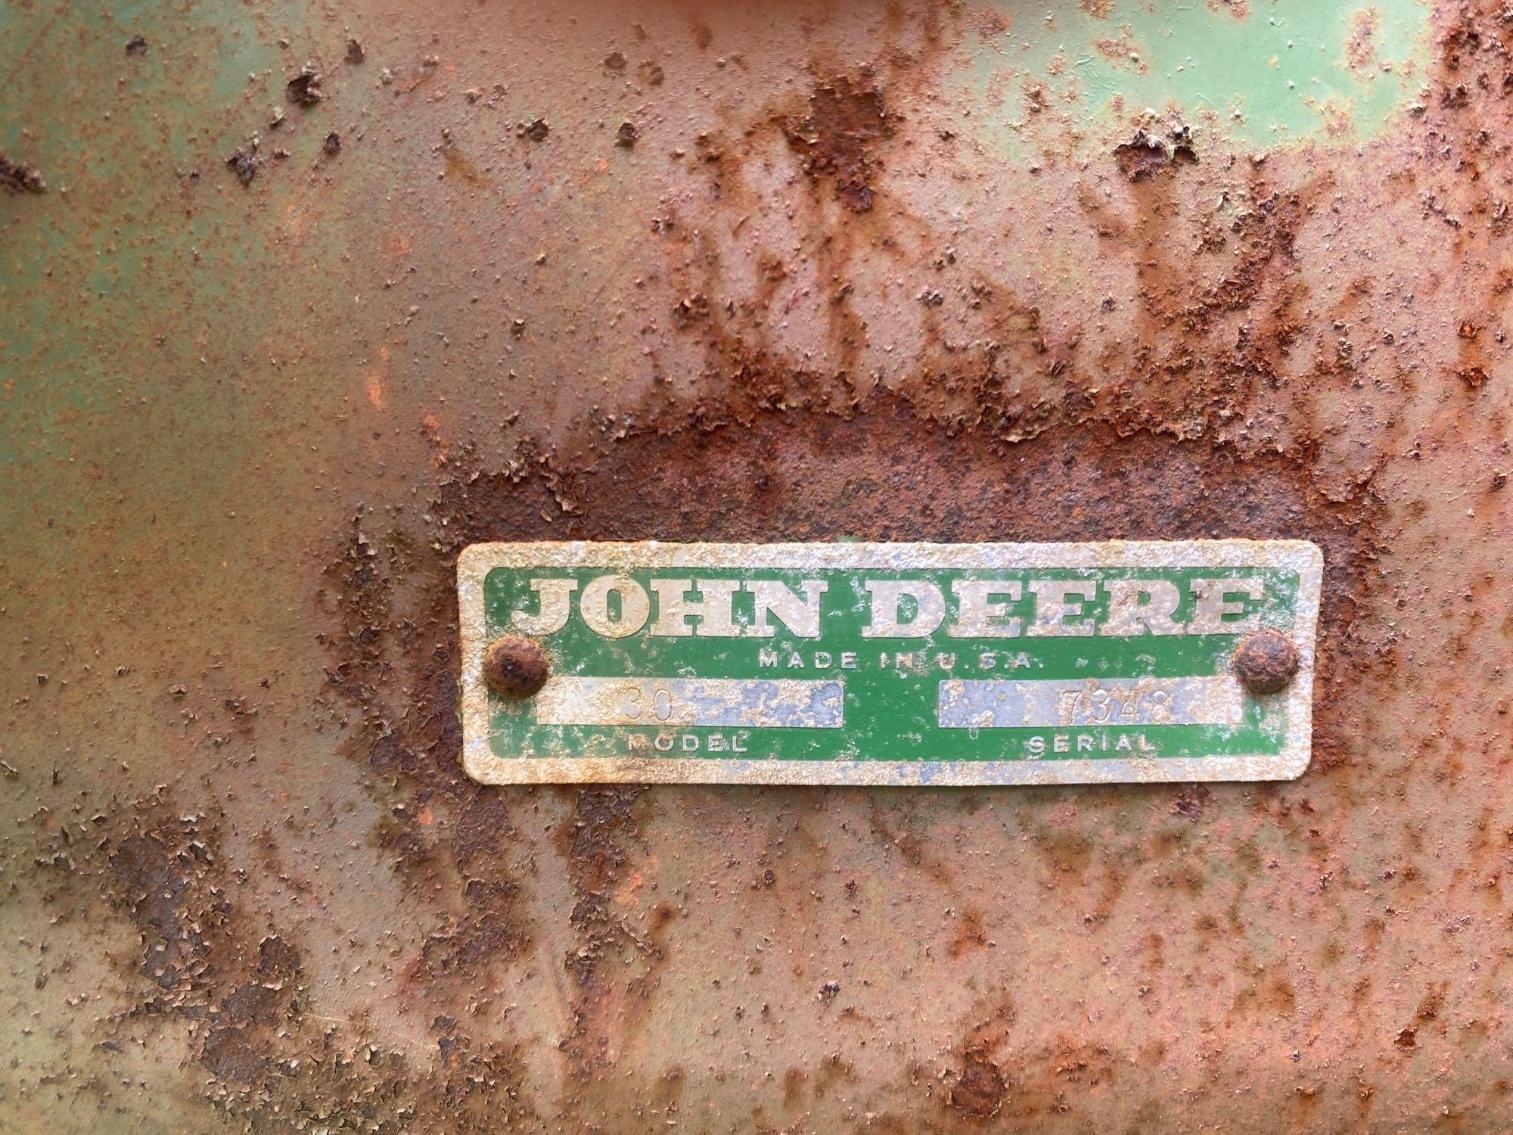 Image for John Deere No. 30 Pull Type Combine